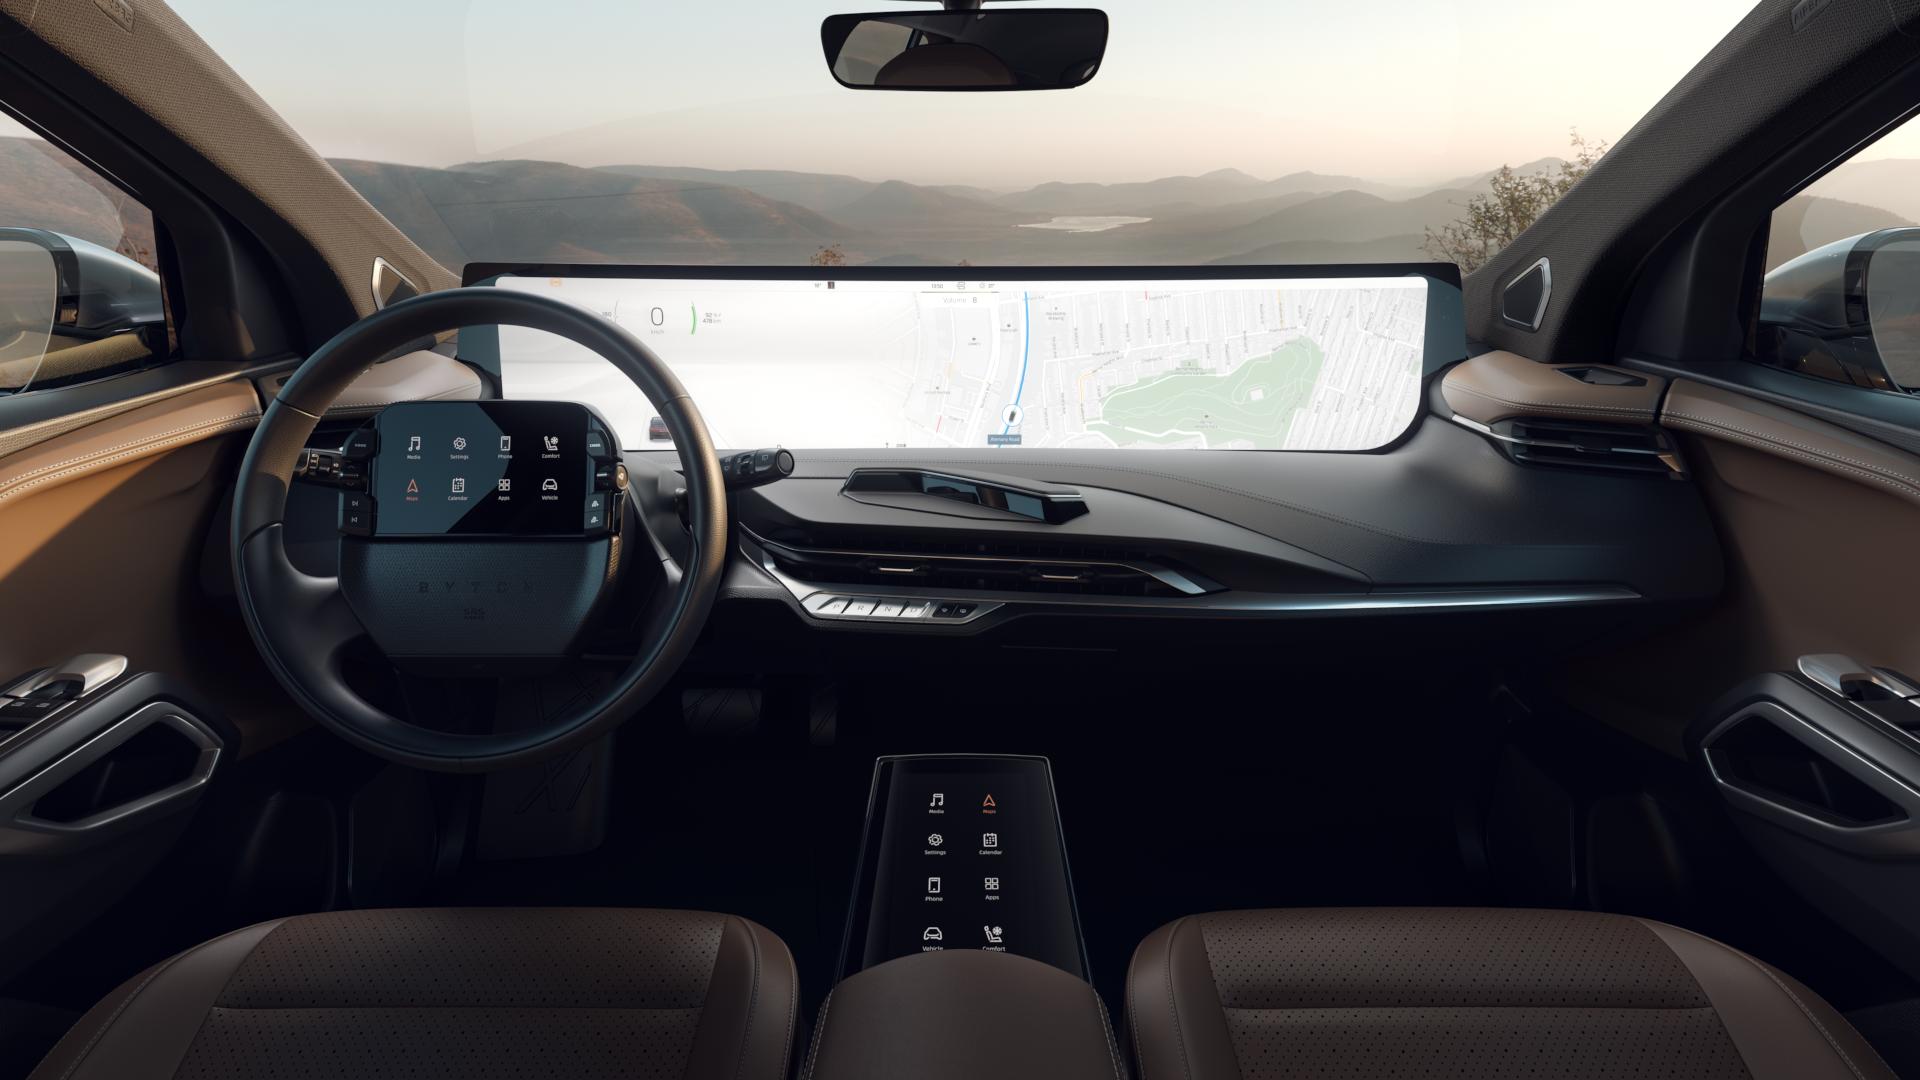 Det som skiller Byton M-Byte fra andre biler, er i hovedsak denne gigantiske skjermen i front. Den skal gjøre at måten vi interagerer med bilen på blir helt ny.